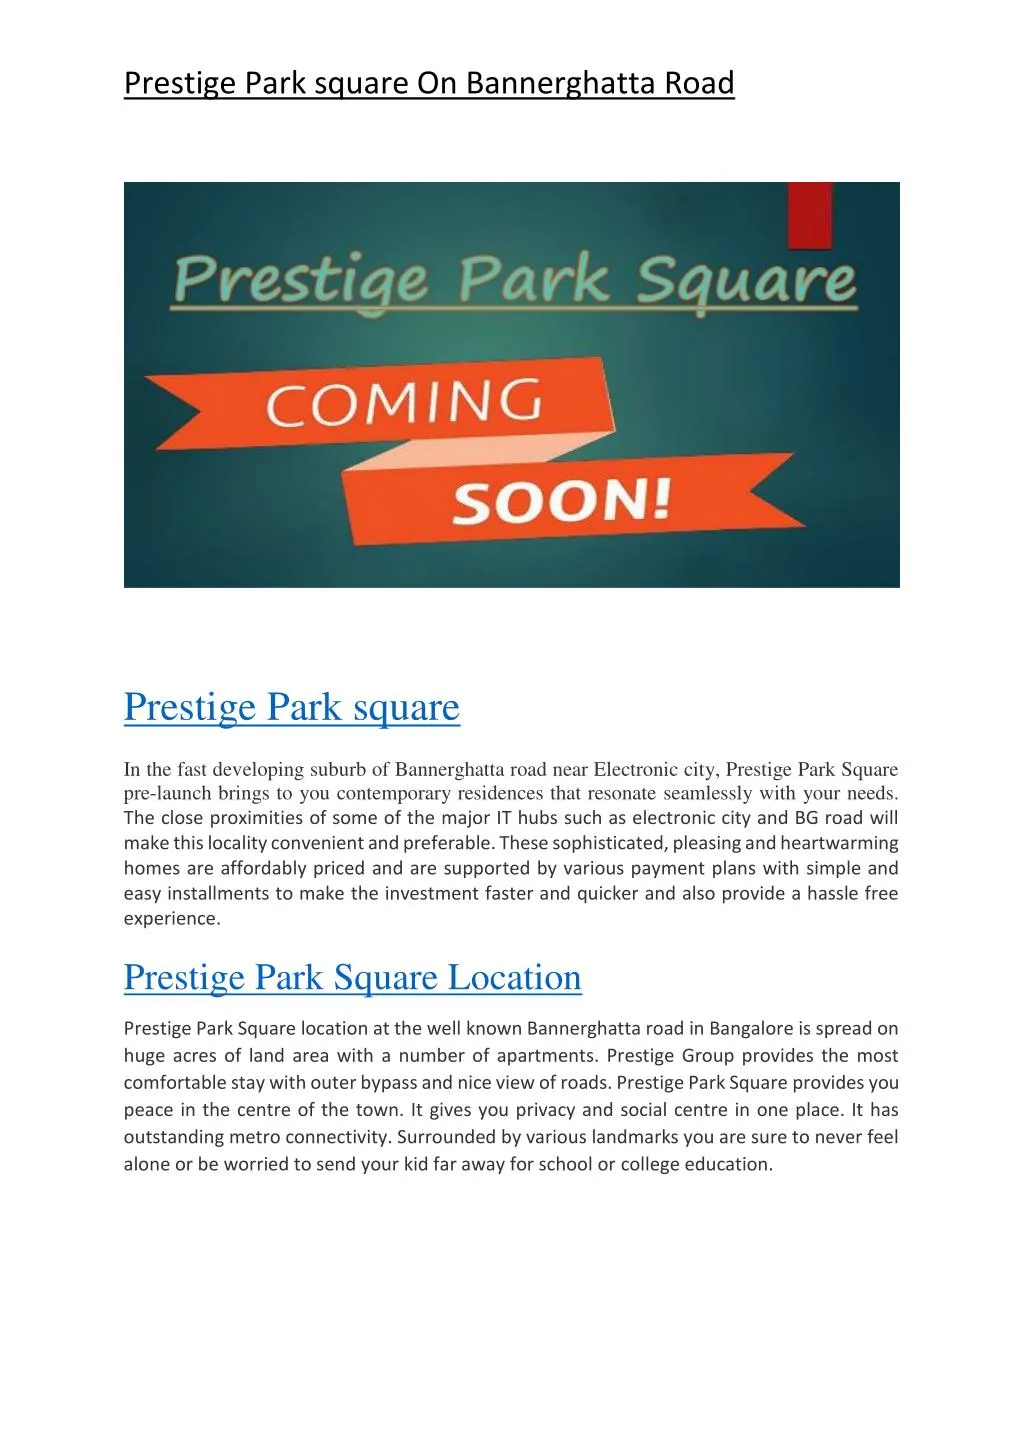 prestige park square on bannerghatta road